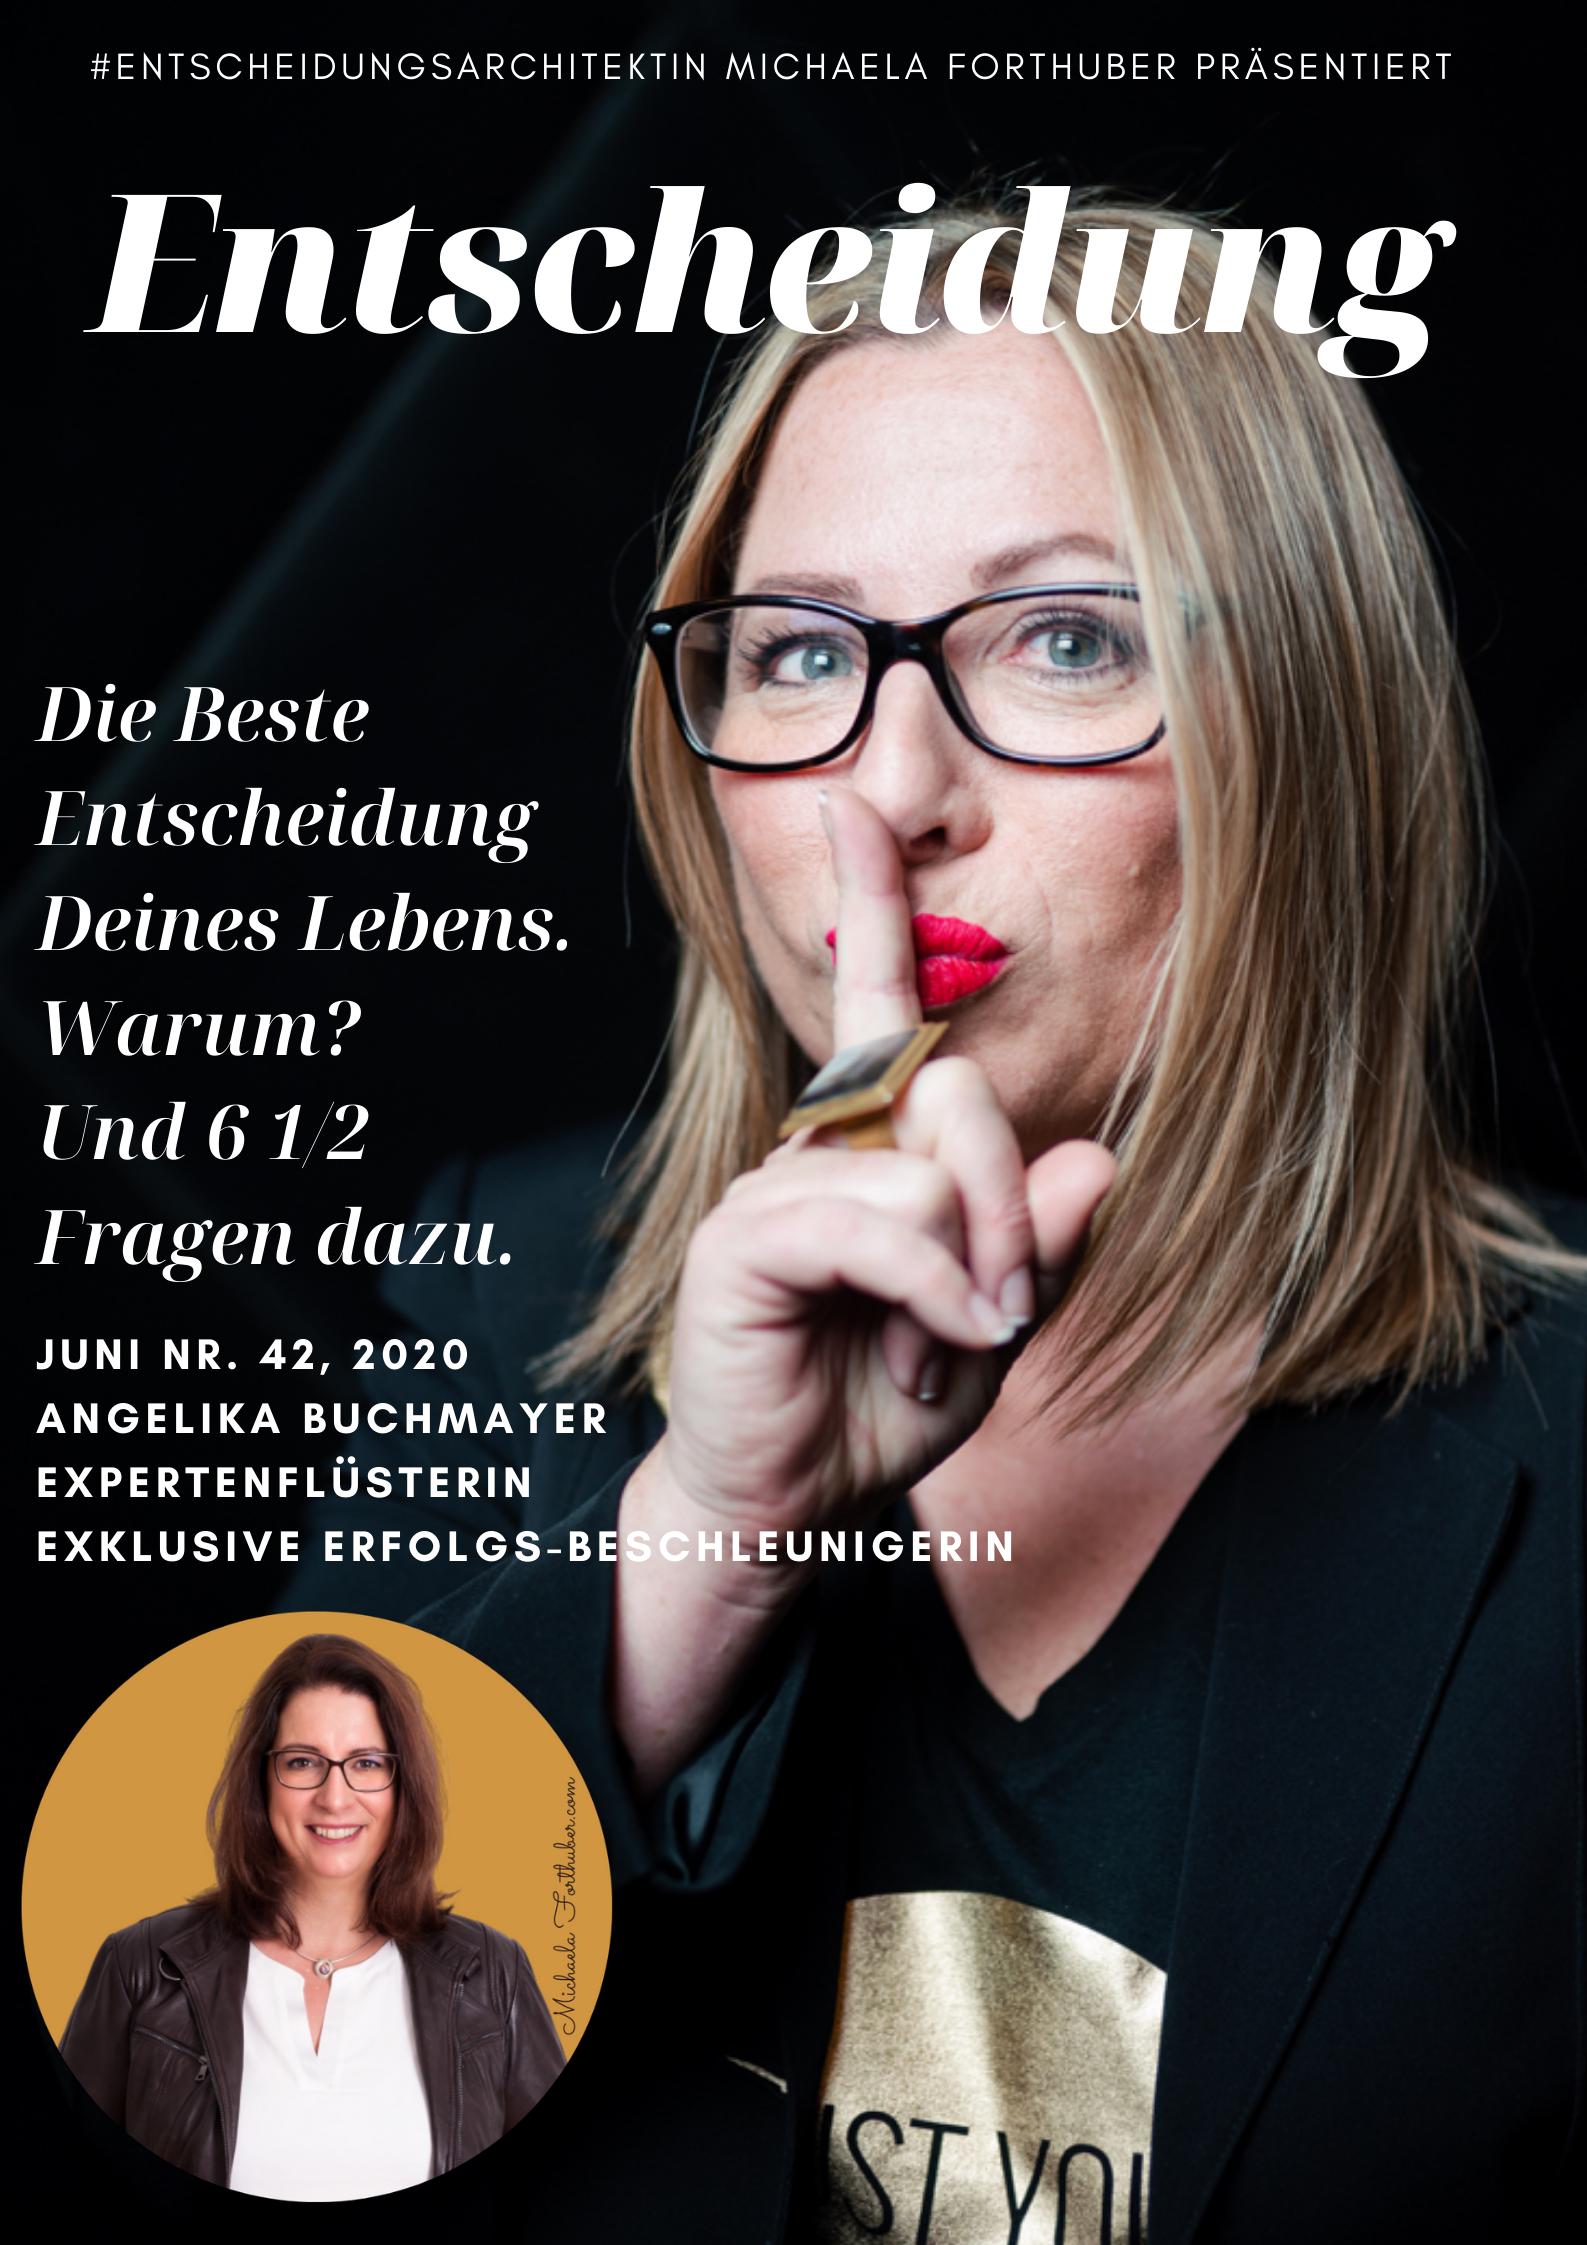 Blog Interview Entscheiden Cover Michaela Forthuber #Entscheidungsarchitektin mit Angelika Buchmayer